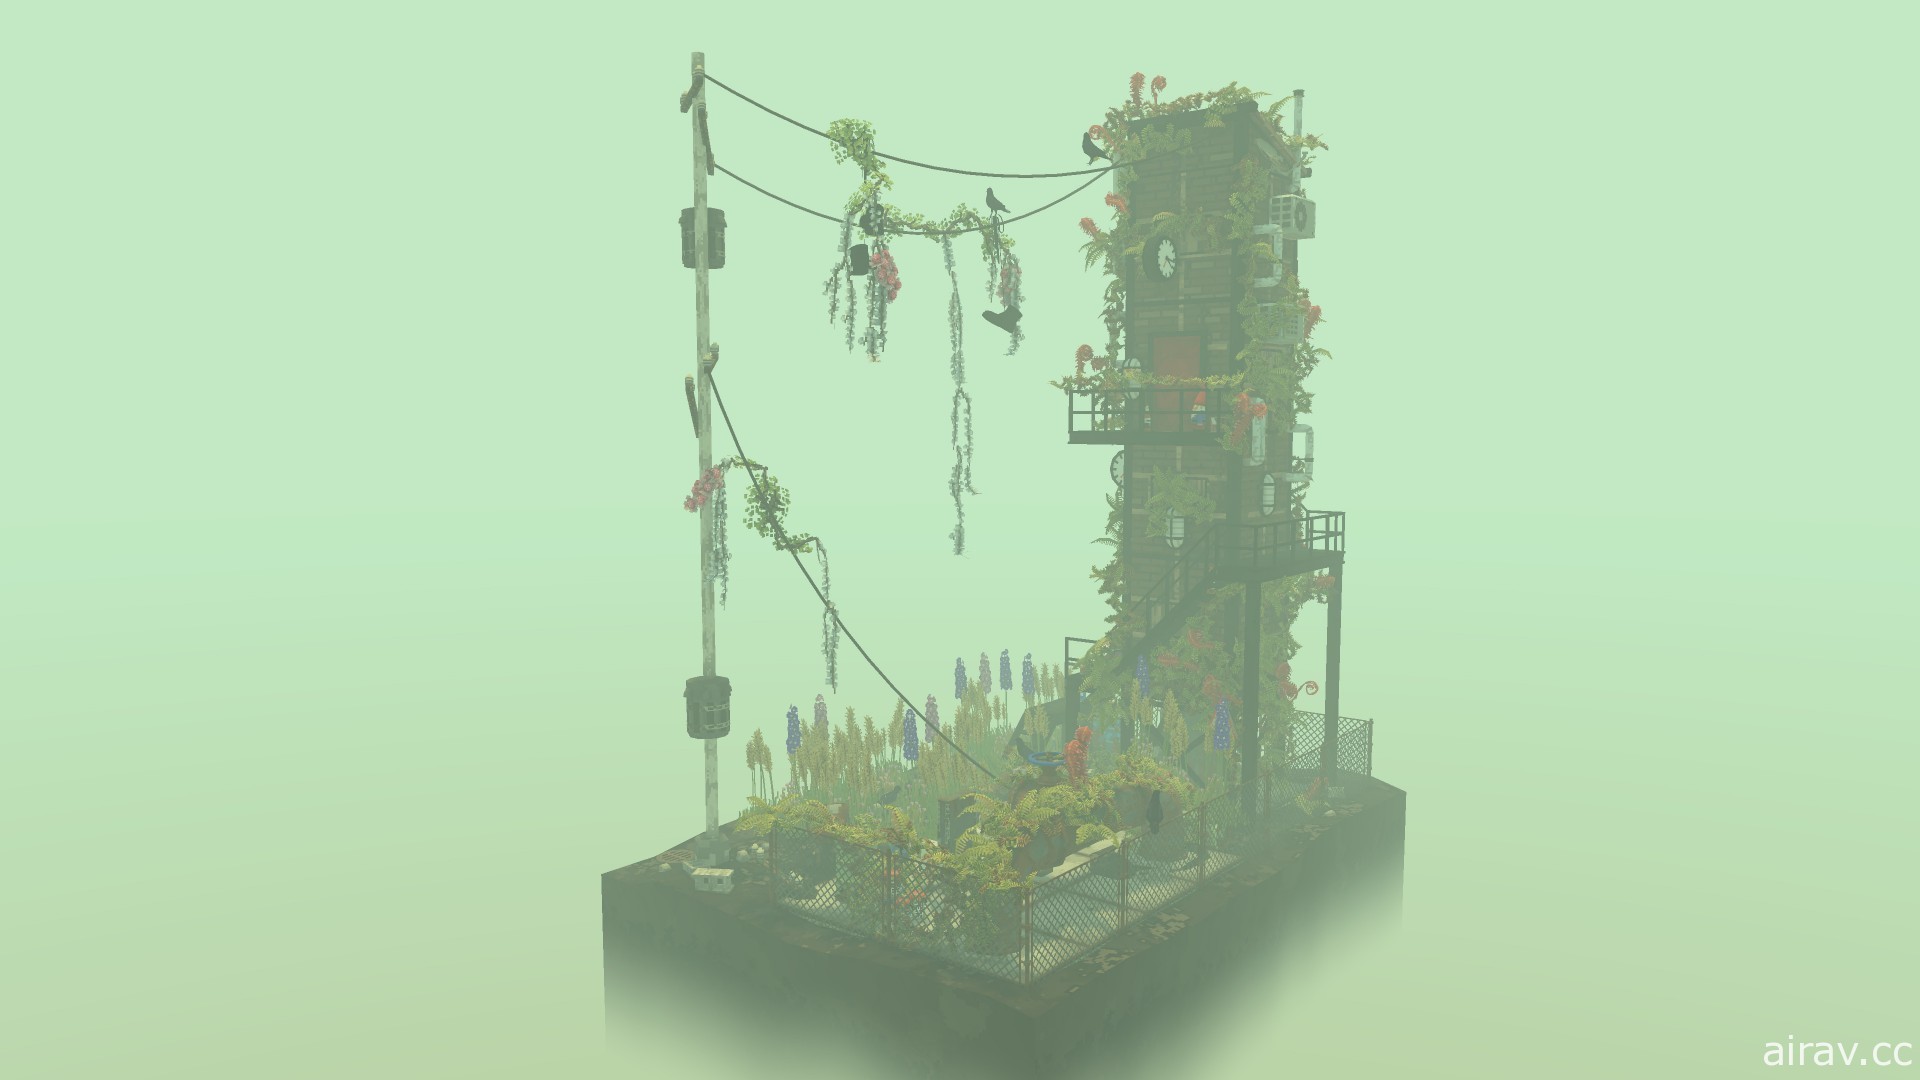 休闲游戏《云中庭》正式登陆 Steam 平台 在废弃荒地上种植生态庭院